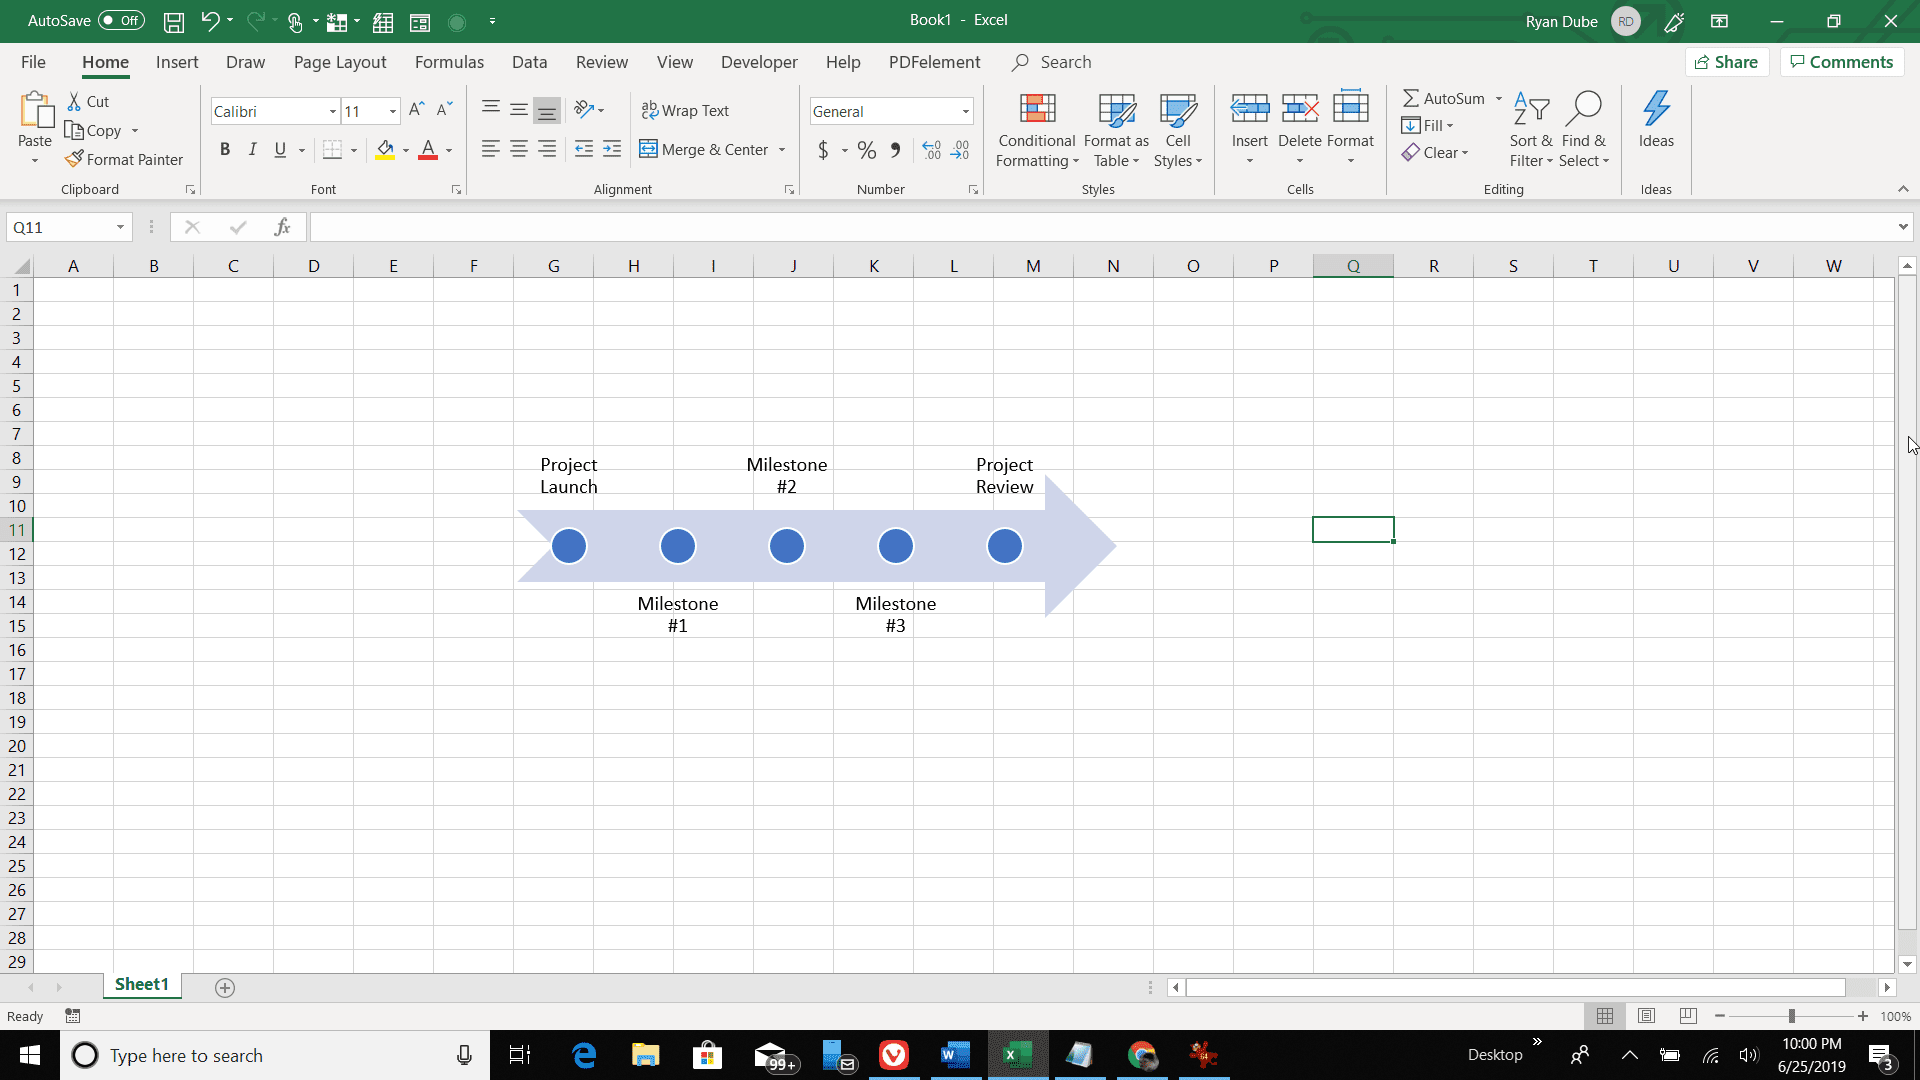 Screenshot časové osy aplikace Excel v listu aplikace Excel